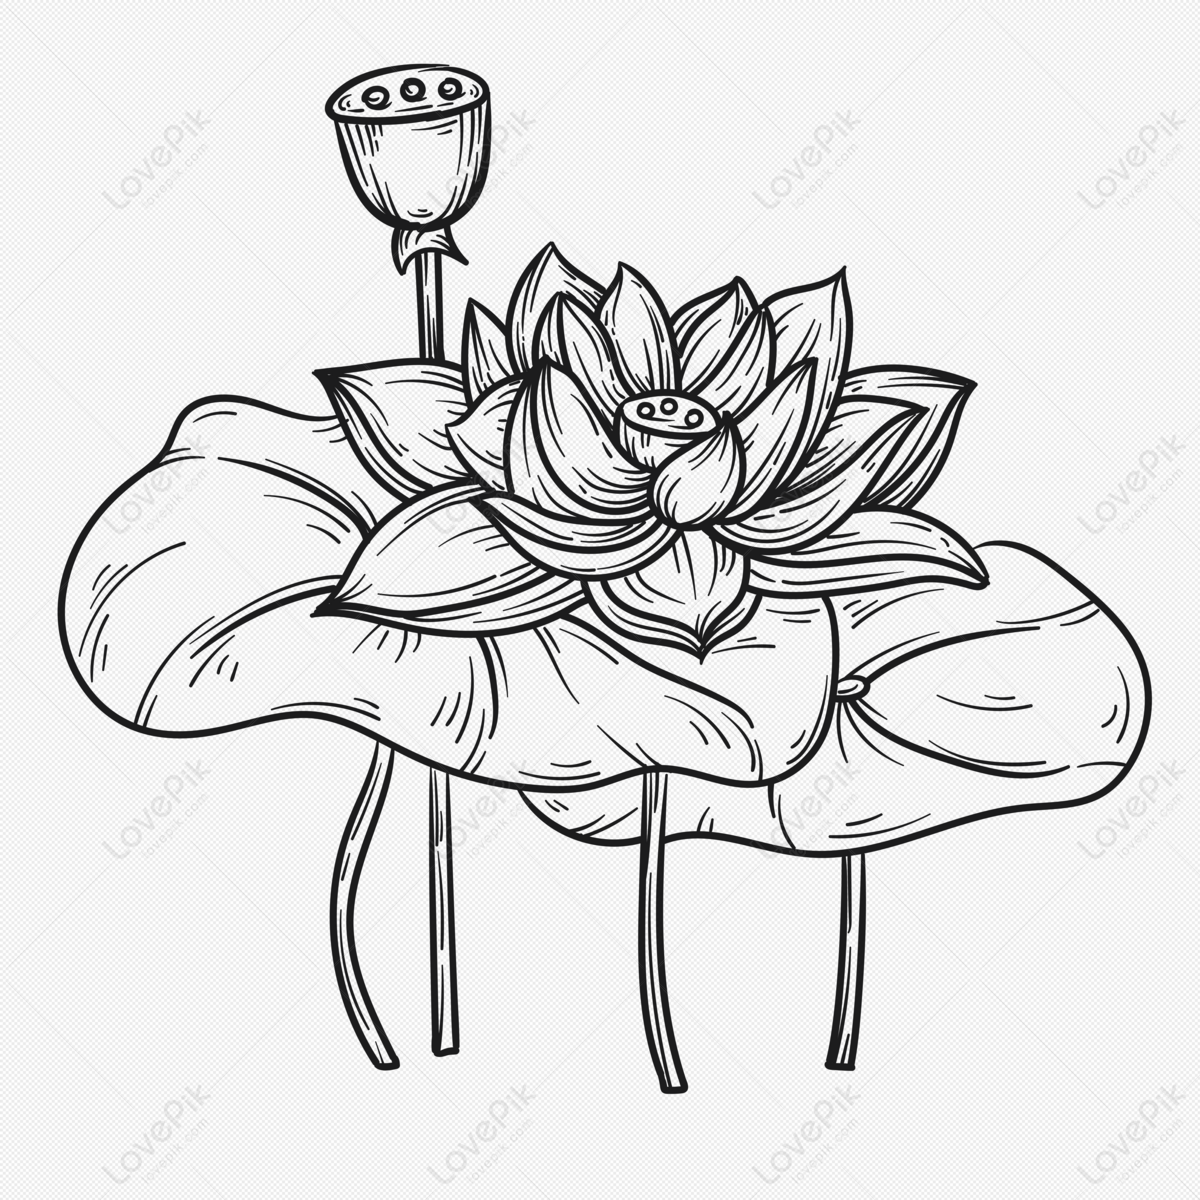 Lotus - A Pencil Drawing